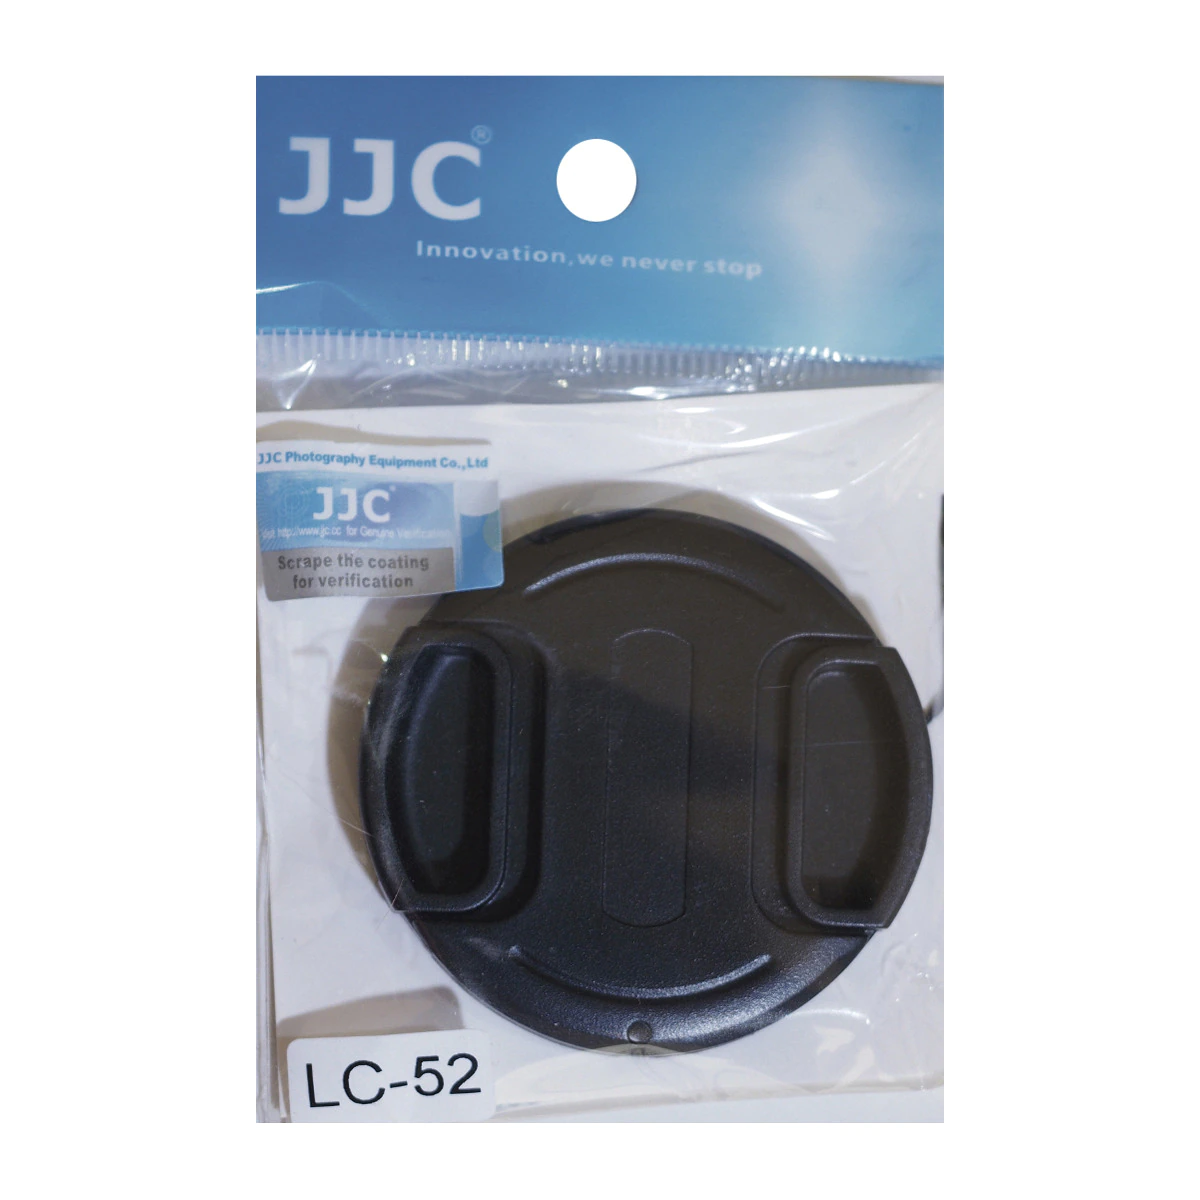 Tapa de protección JJC para objetivos con diametro 52 mm